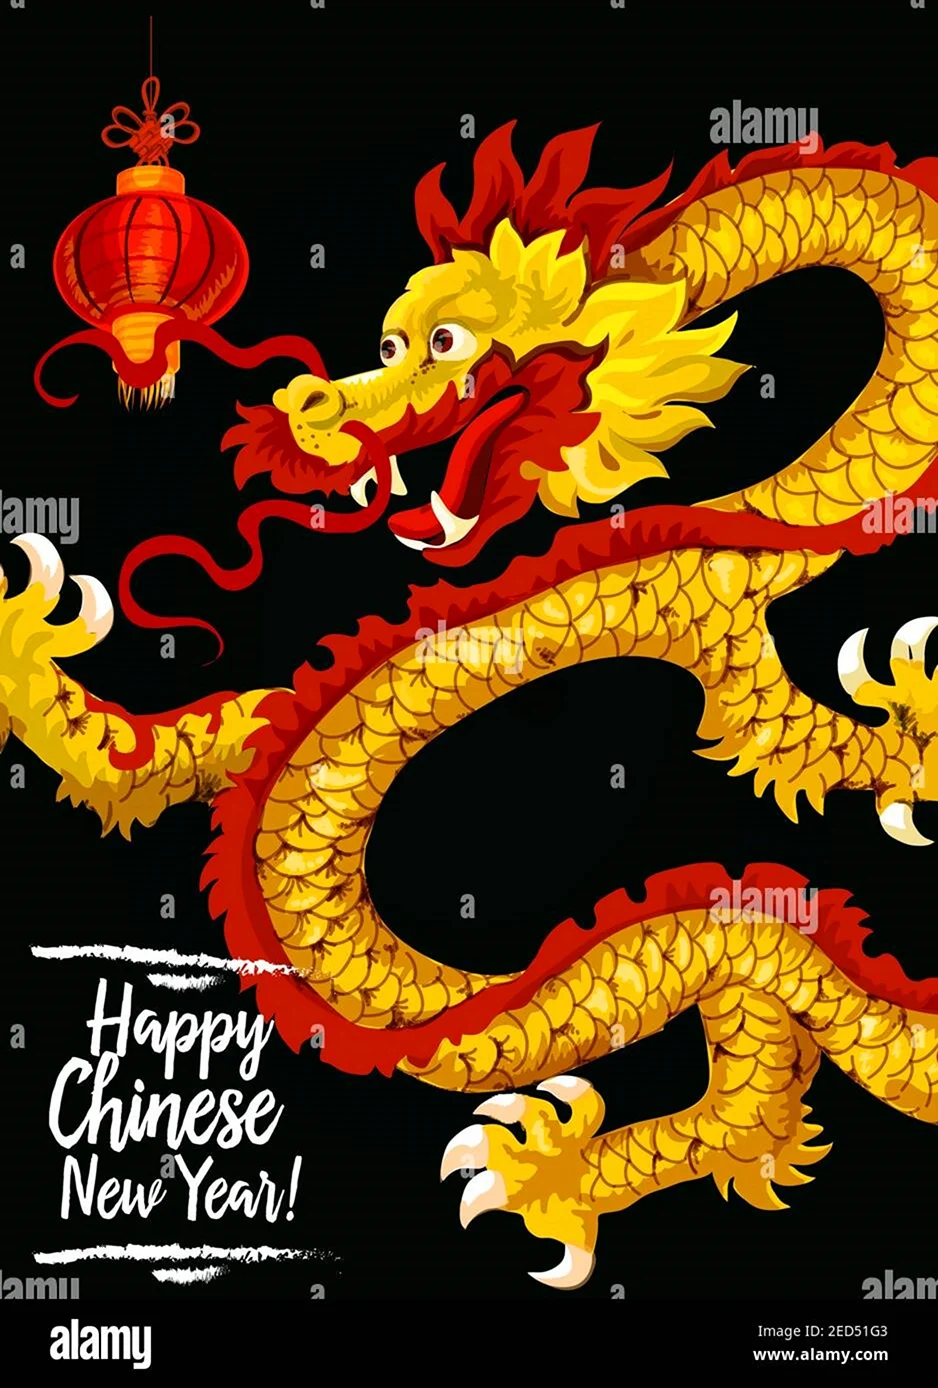 Китайский новый год дракон. Открытка на праздник